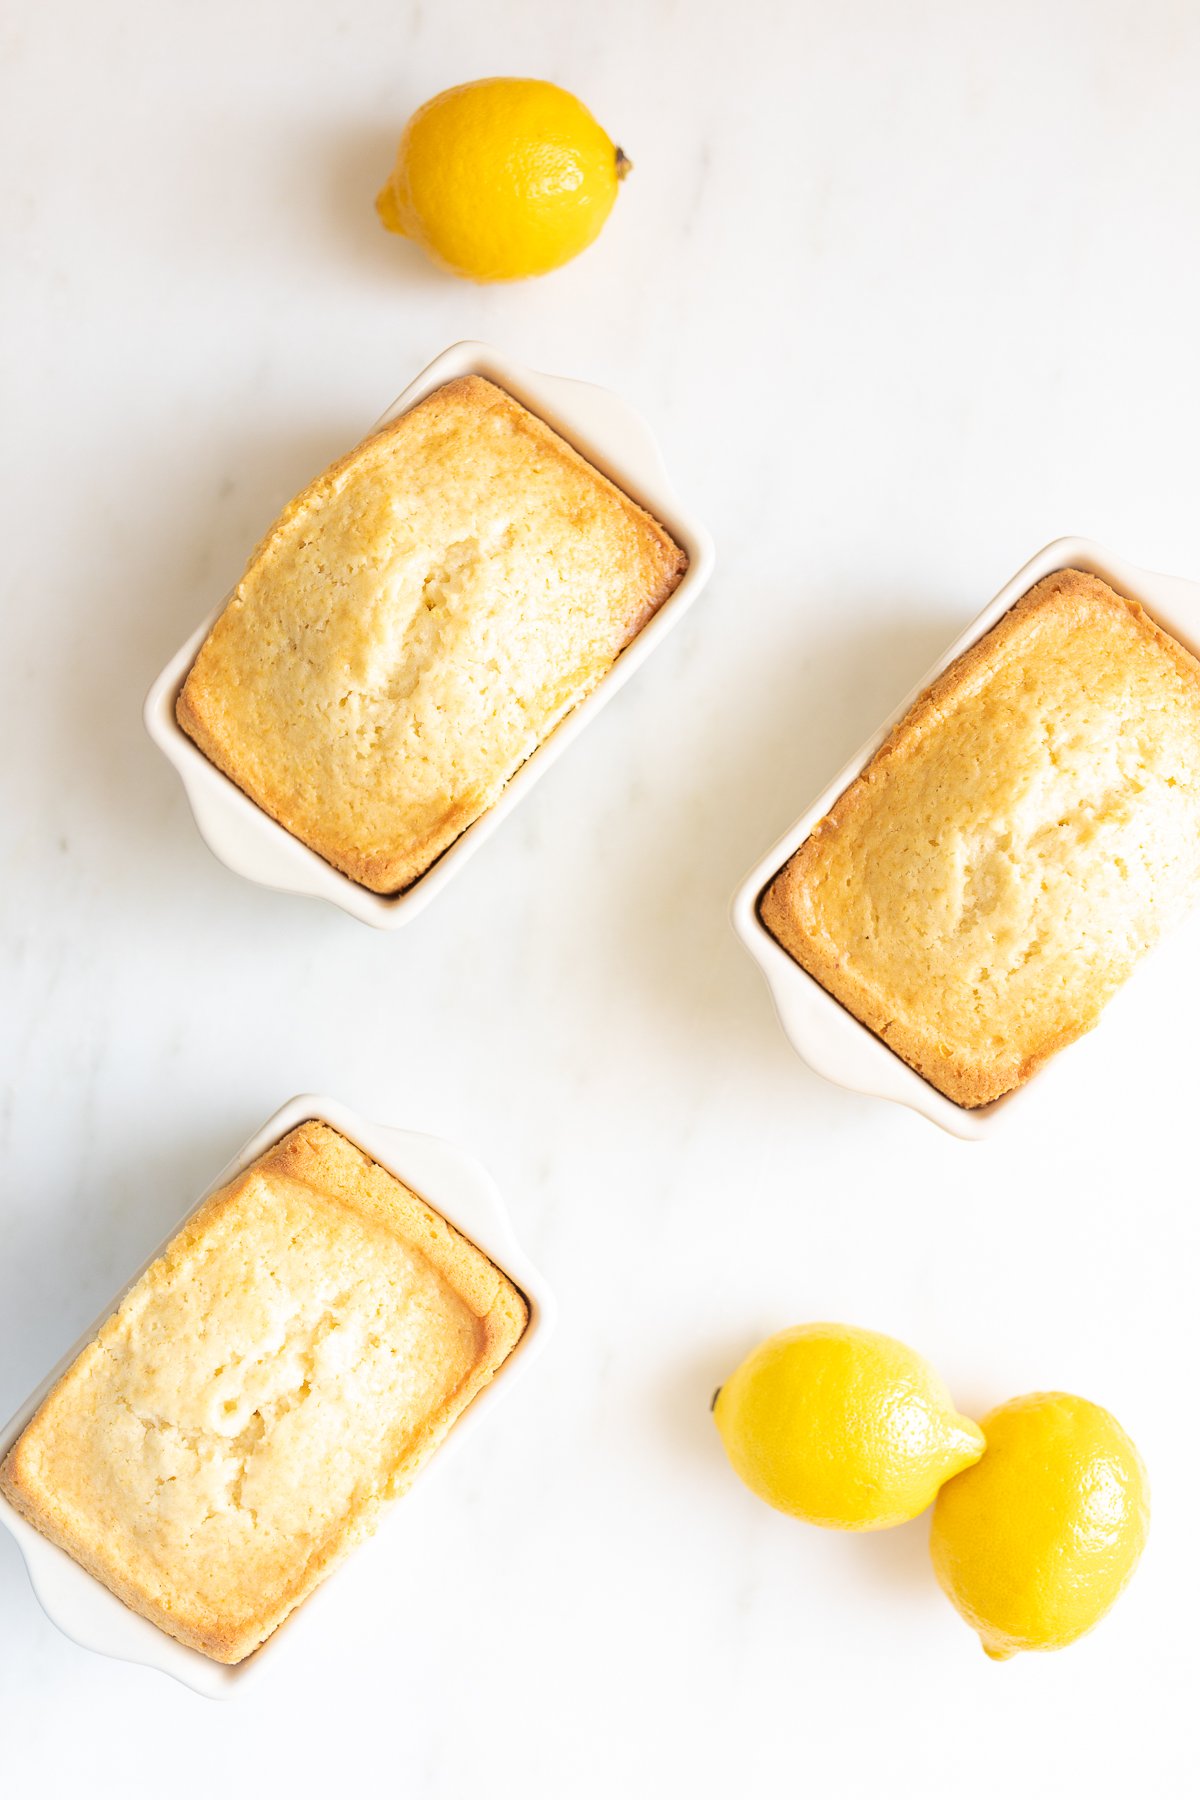 Mini lemon loaves on a white countertop.